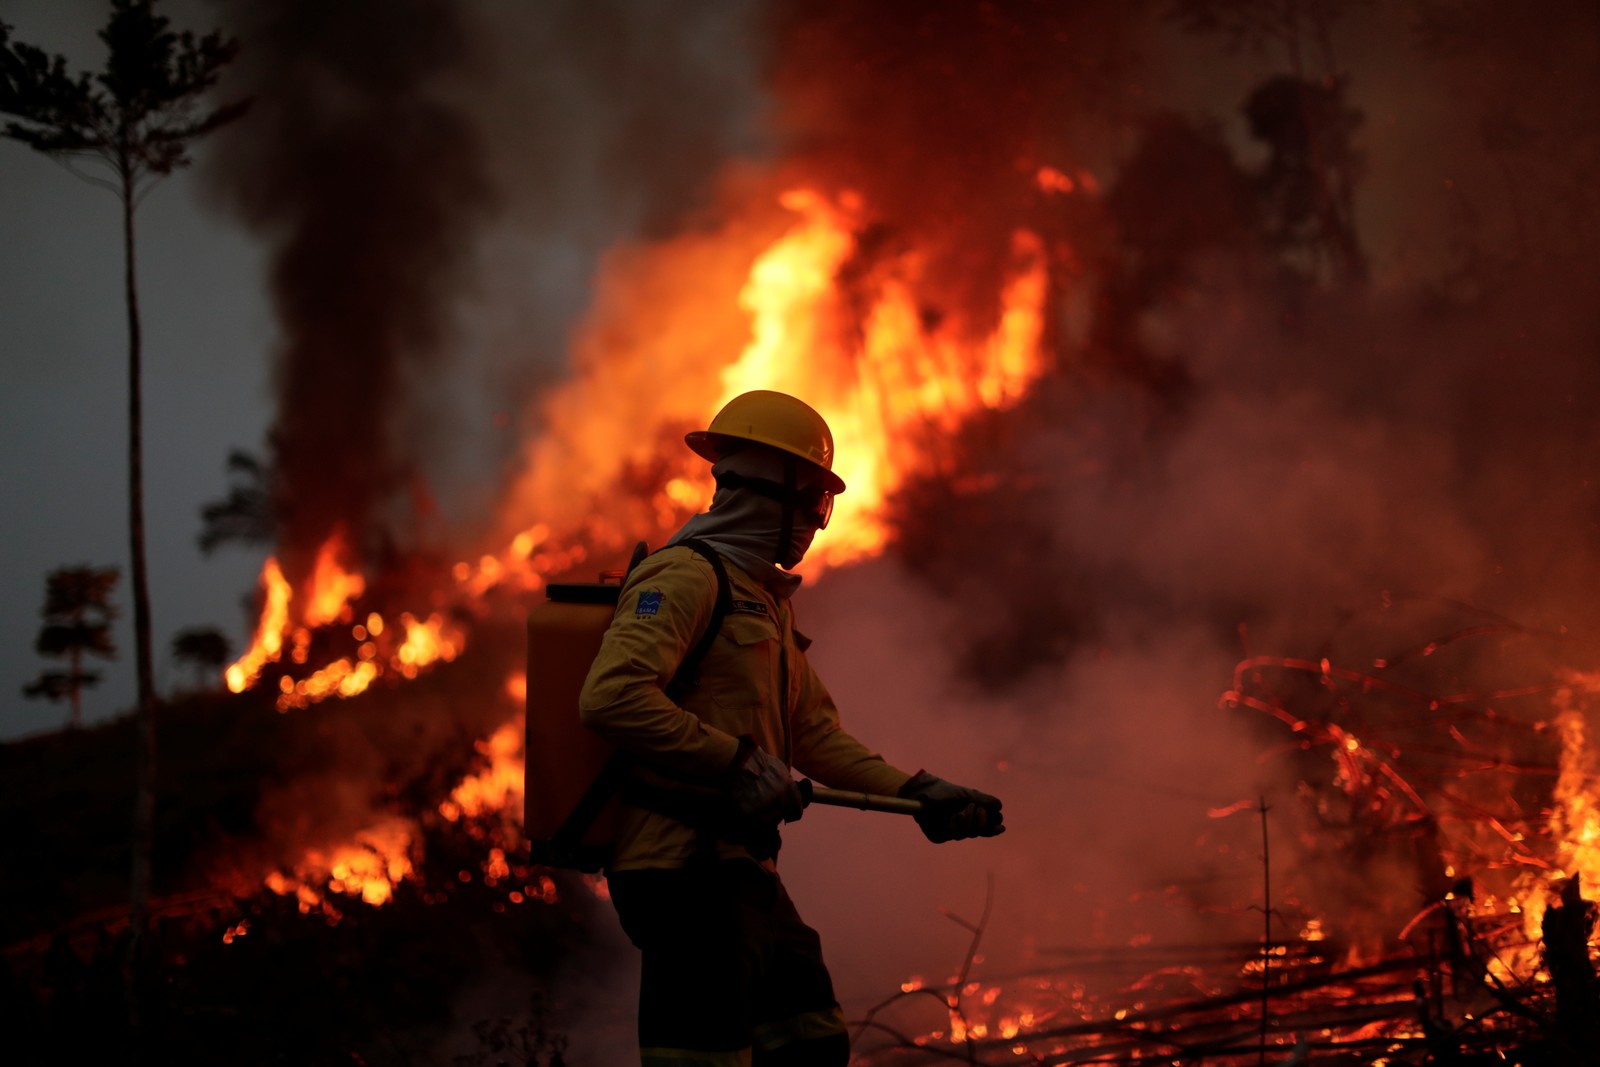 Membro da brigada de incêndio do Instituto Brasileiro do Meio Ambiente e dos Recursos Naturais Renováveis (Ibama) tenta controlar um incêndio em uma área da selva amazônica em Apuí, Estado do AmazonasREUTERS